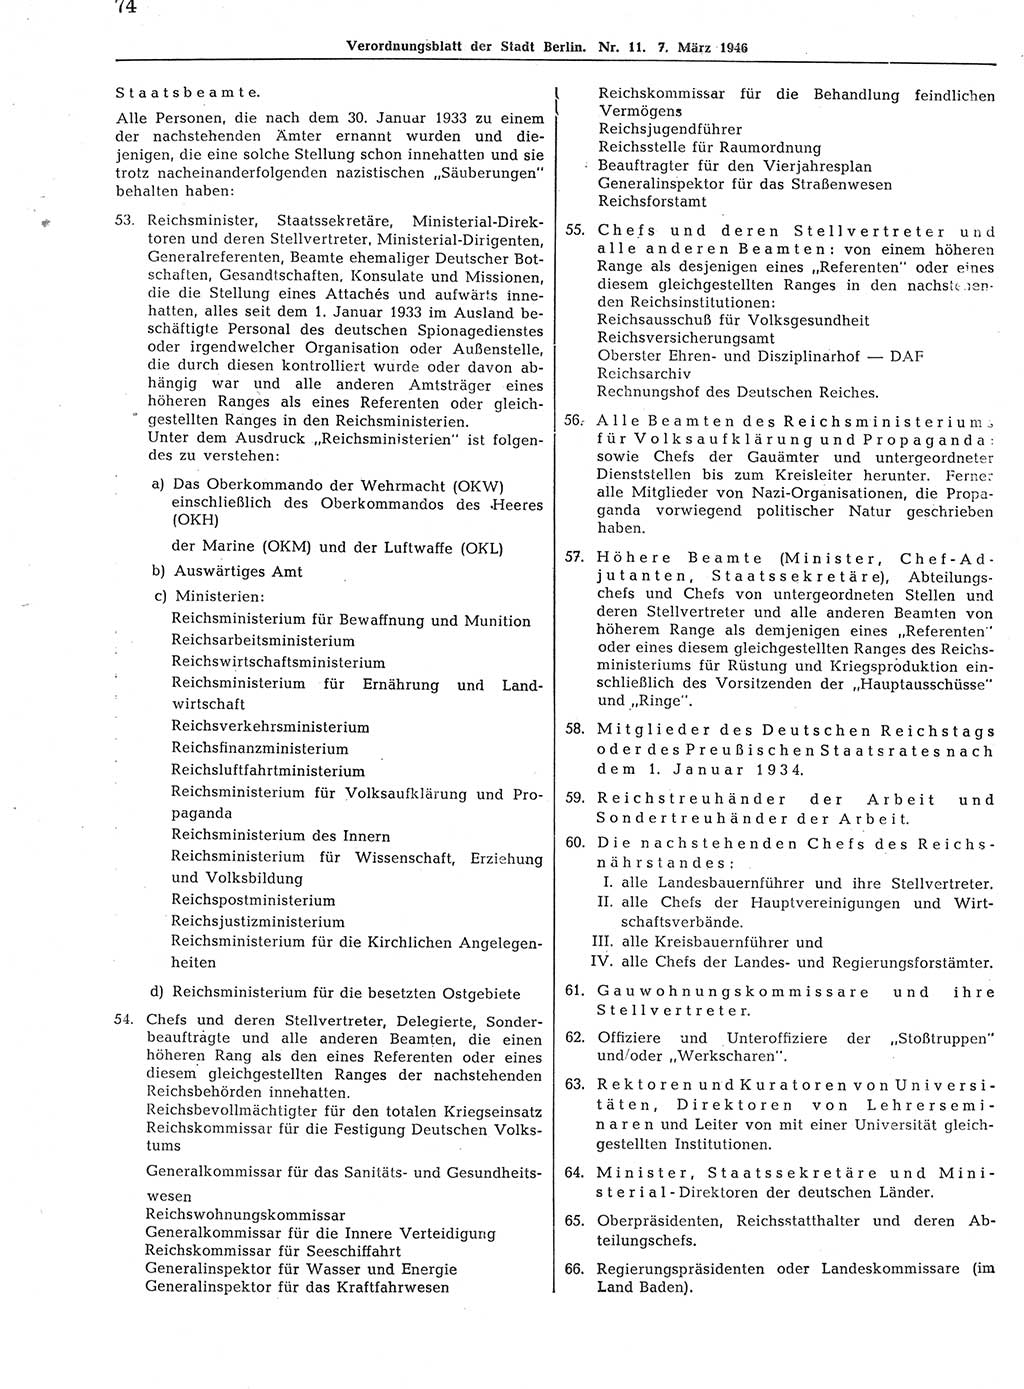 Verordnungsblatt (VOBl.) der Stadt Berlin, für Groß-Berlin 1946, Seite 74 (VOBl. Bln. 1946, S. 74)